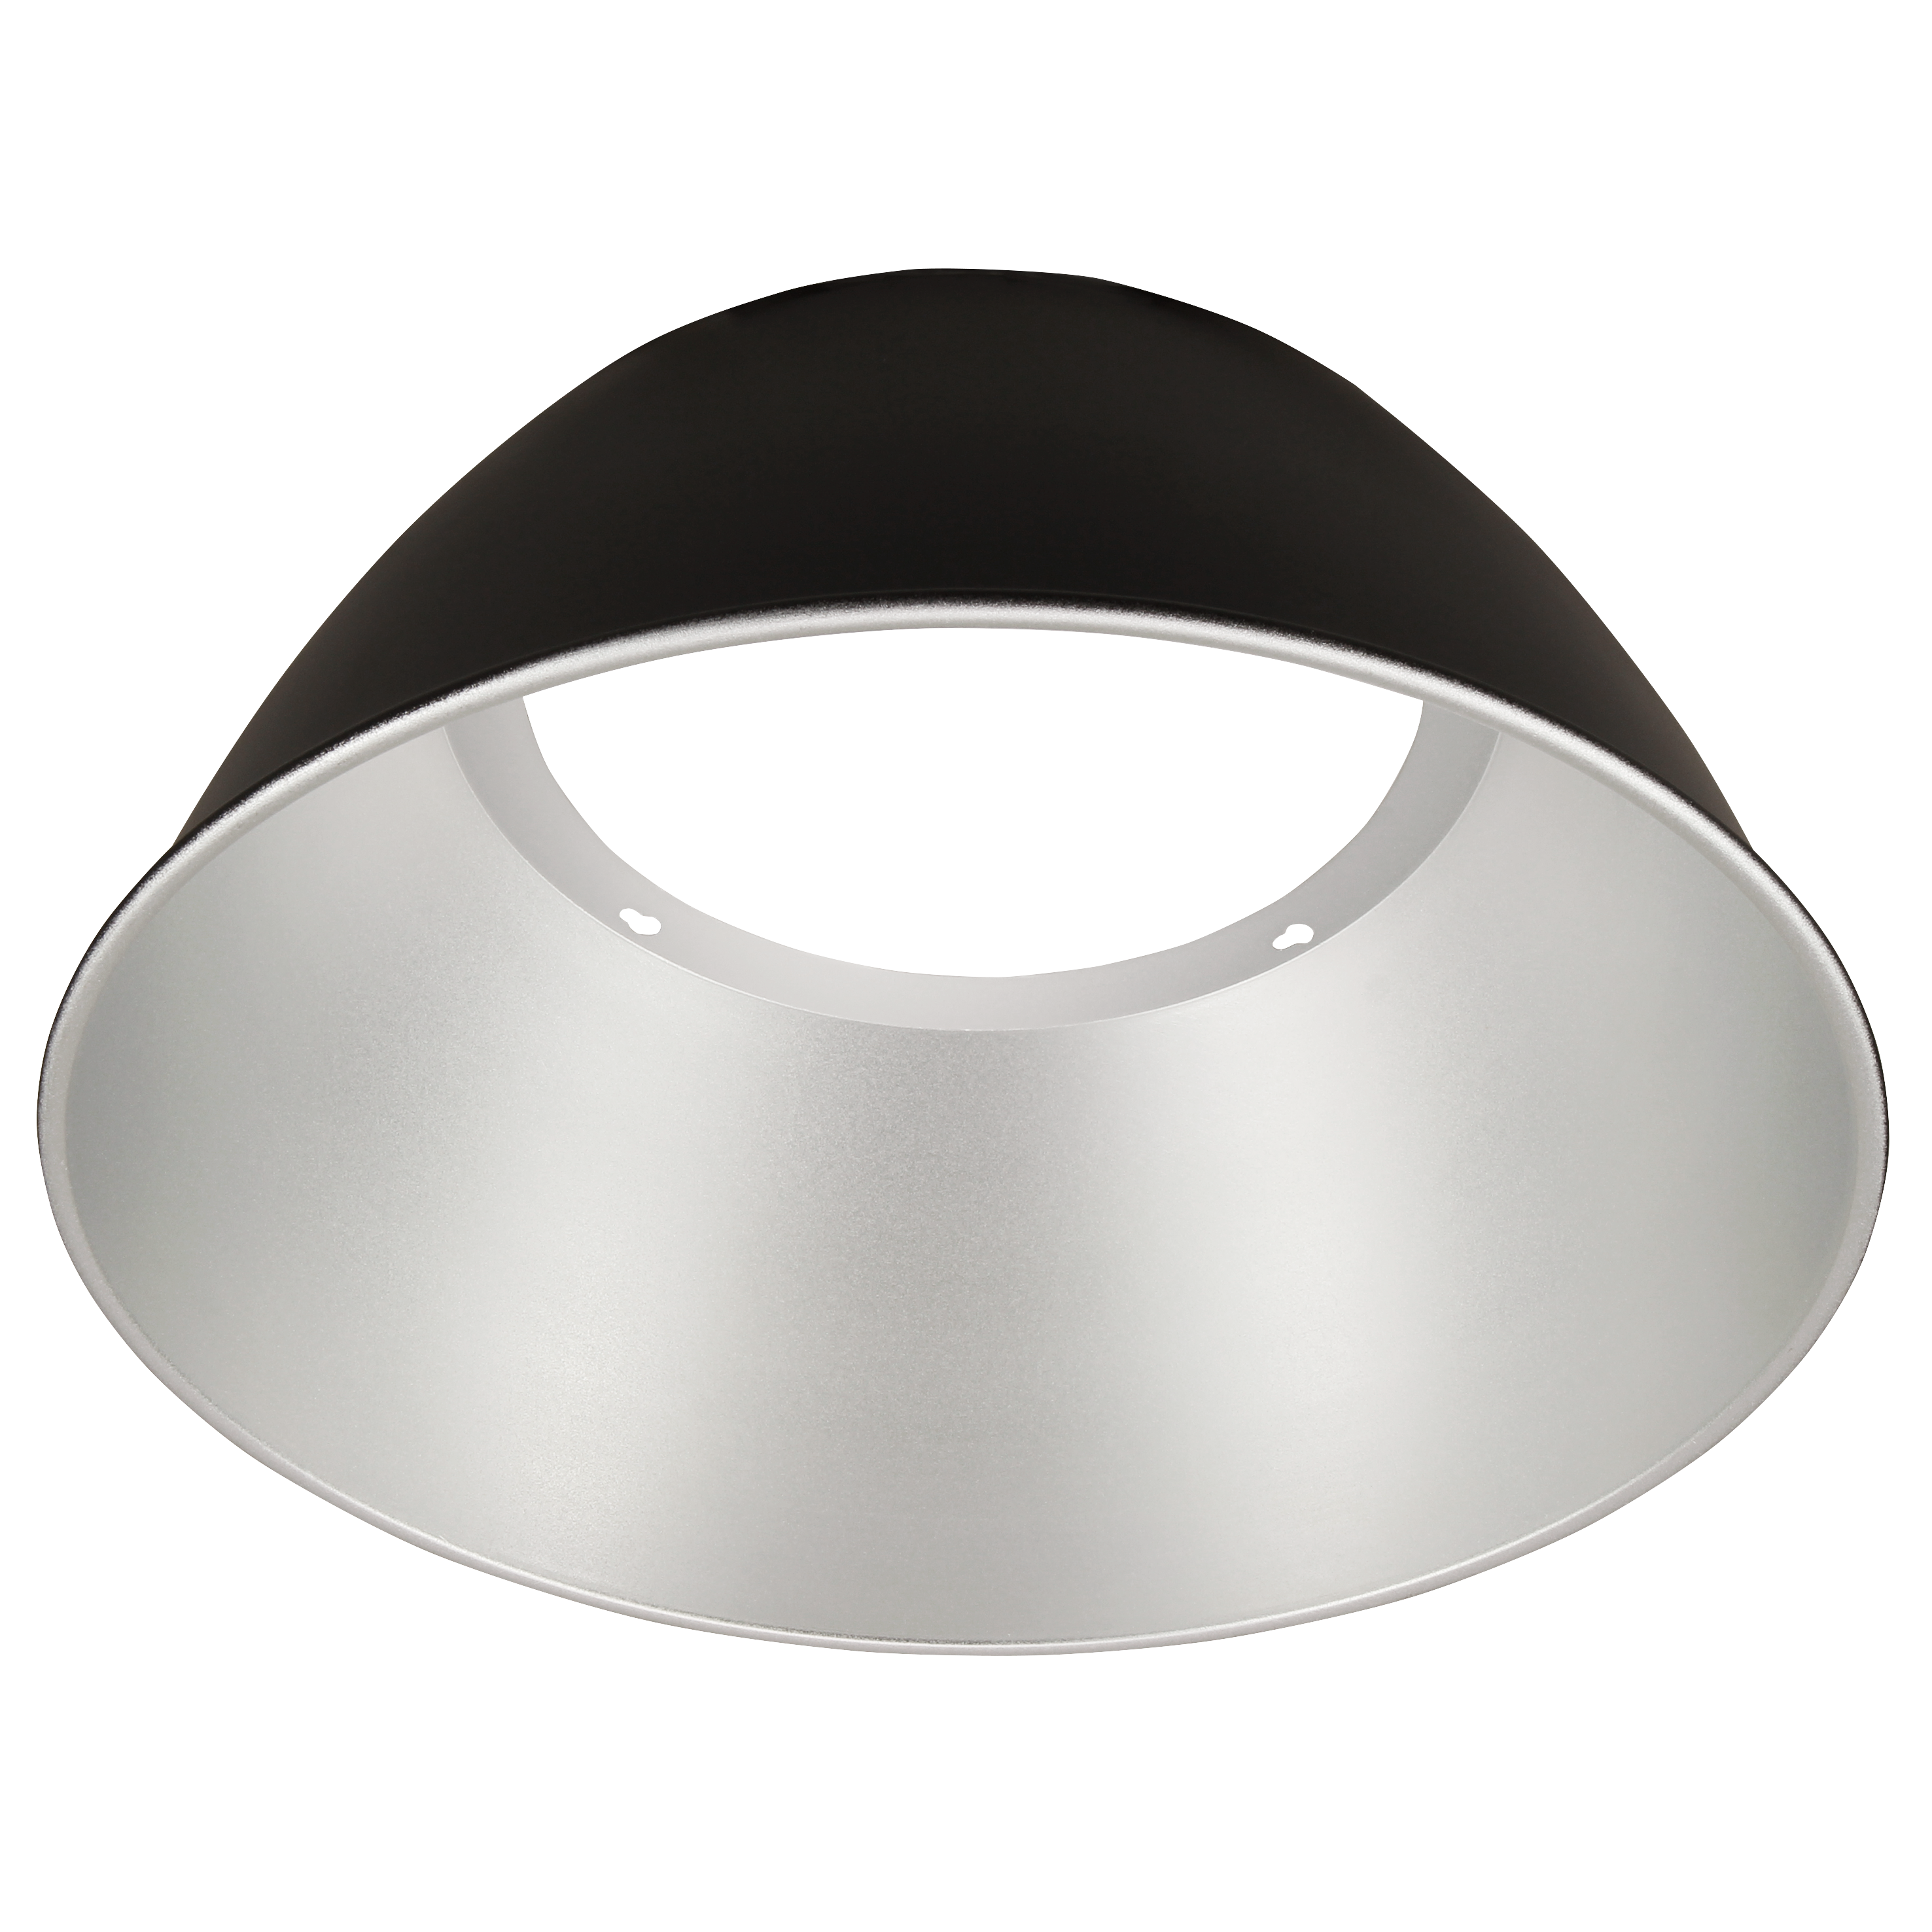 Reflektor für McShine UFO-Hallenstrahler, 60°, passend für alle Wattagen